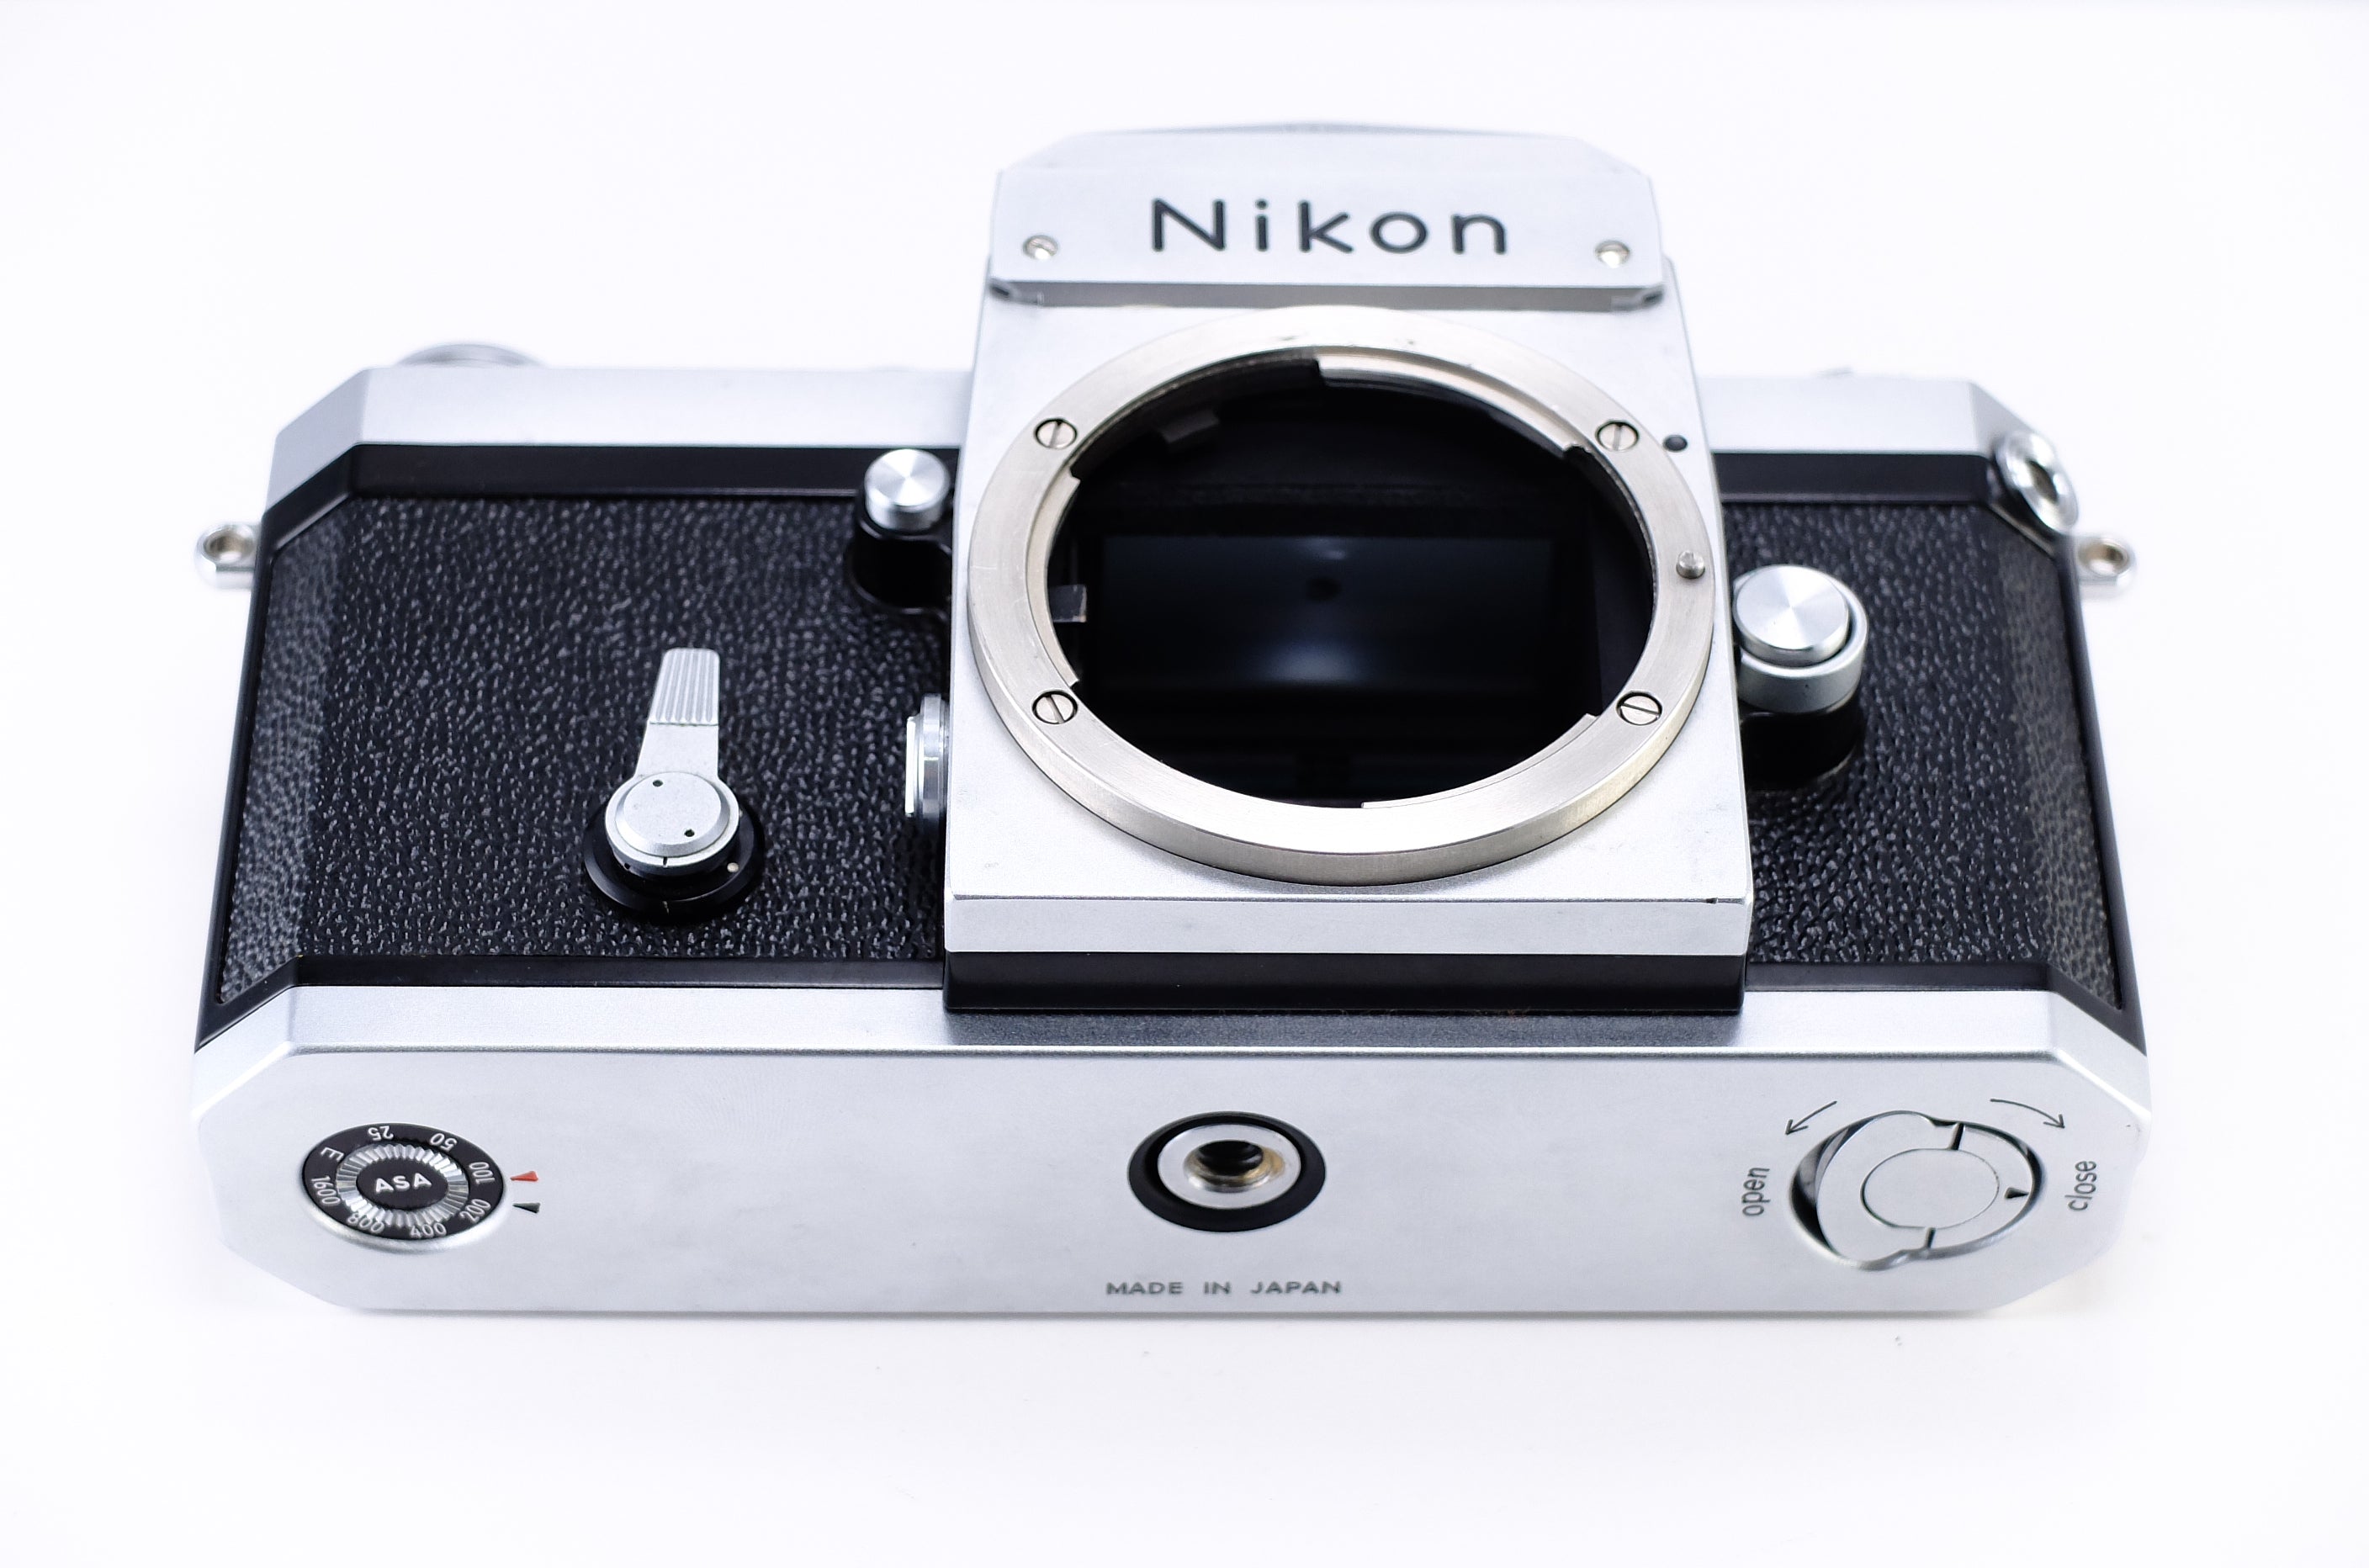 Nikon】F アイレベルファインダー (シルバー) + NIKKOR-S Auto 50mm F1 